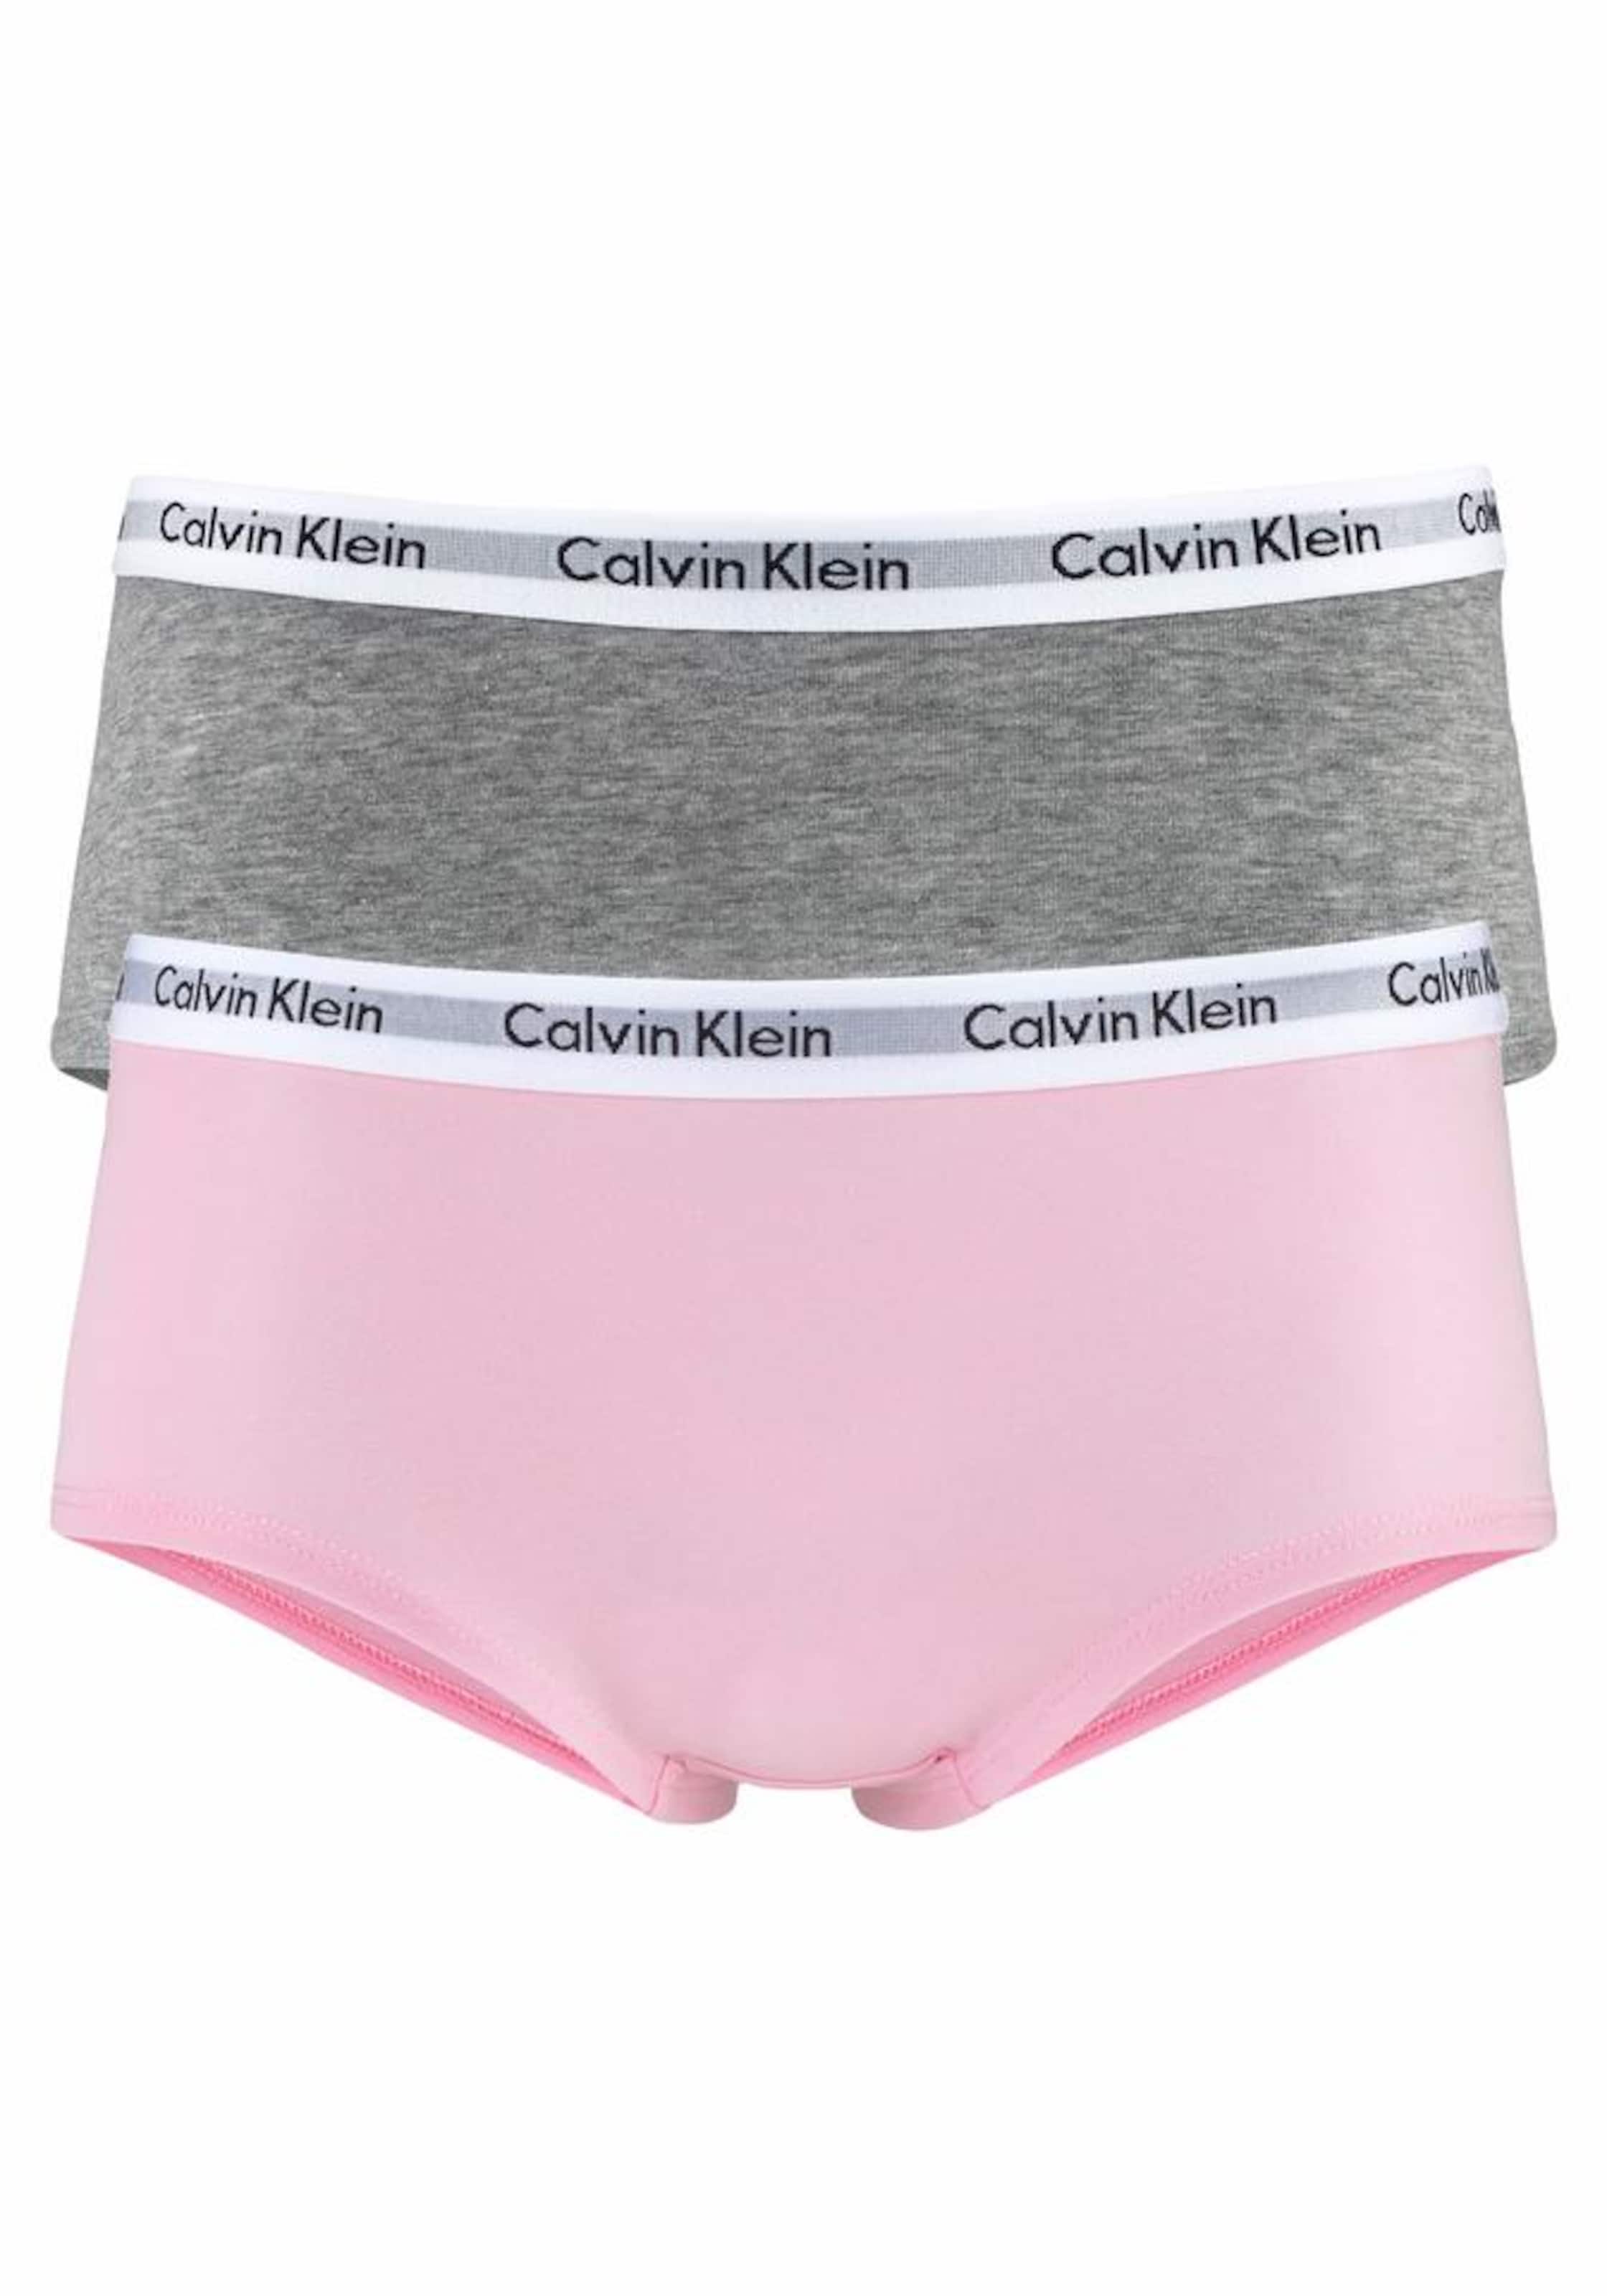 Tailles ados 140-176 Sous-vêtements Calvin Klein Underwear en Gris Chiné, Rose Clair 